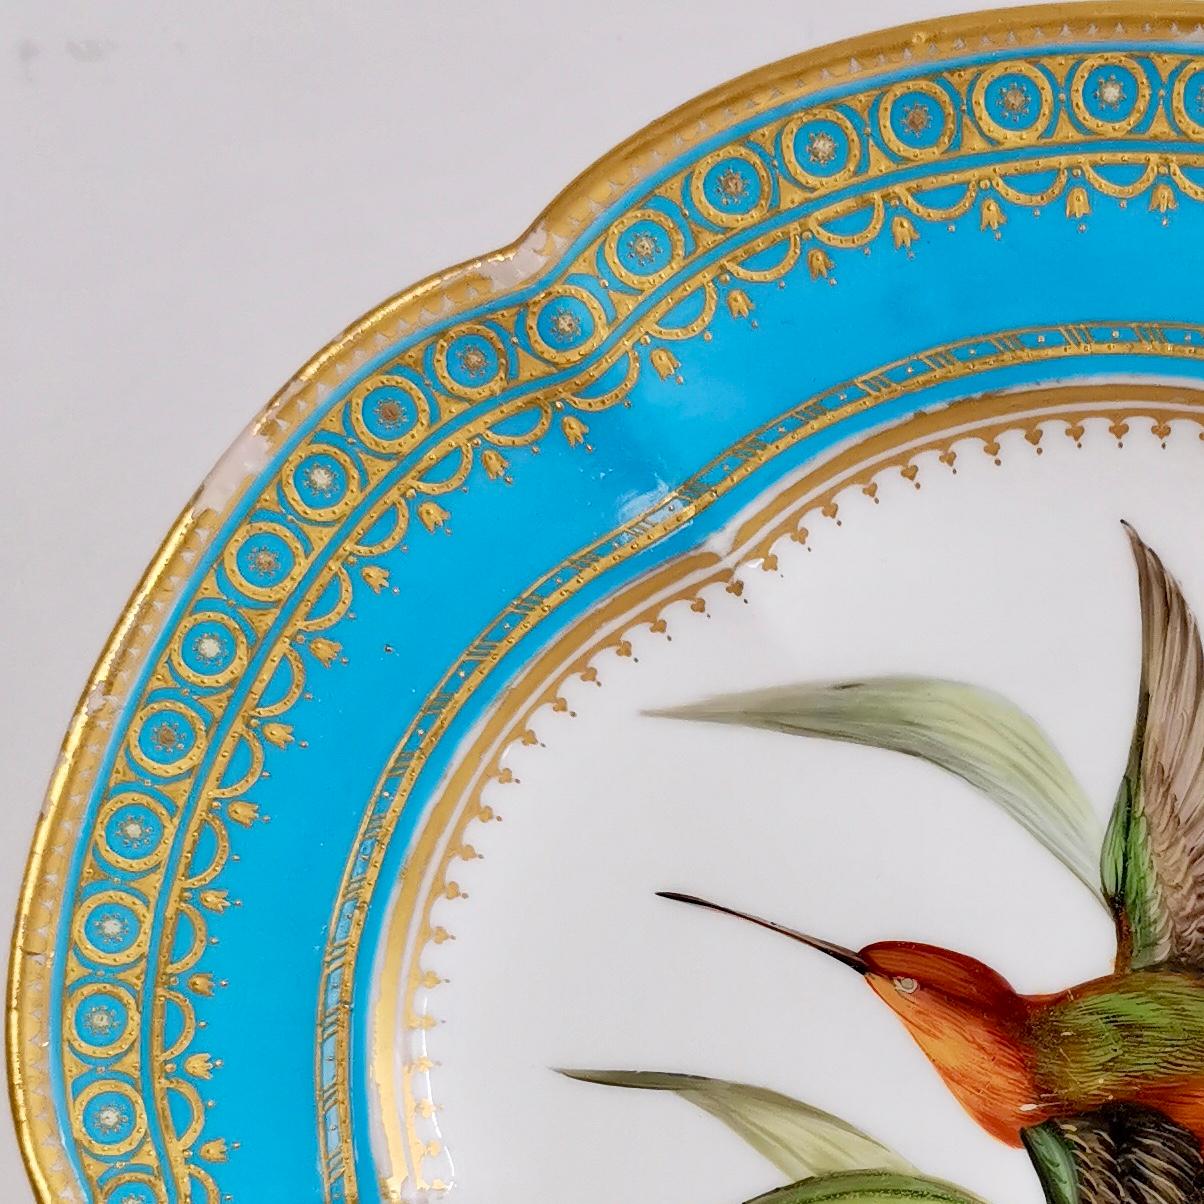 Porcelain Coalport Dessert Plate, Humming Bird by John Randall, circa 1870